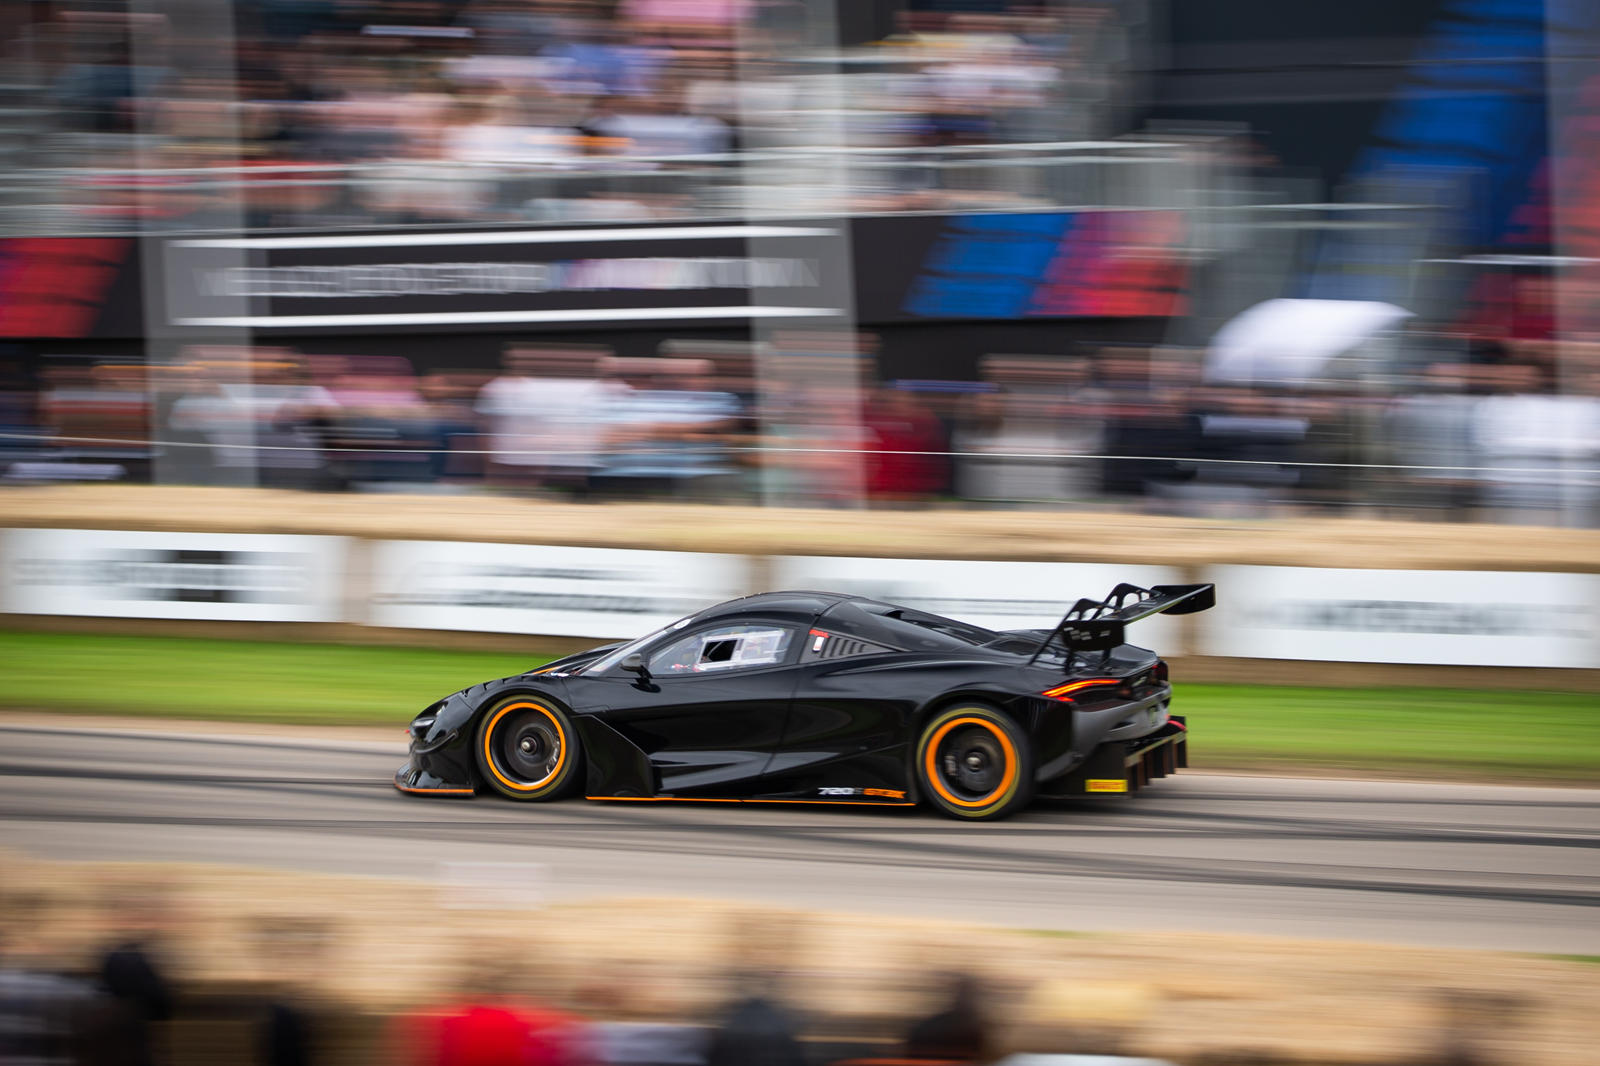 Во время финала на время на выбывание заводской пилот McLaren Роб Белл установил самое быстрое время дня на McLaren 720S GT3X, показав 45,01 секунды, опередив своего ближайшего соперника более чем на секунду.